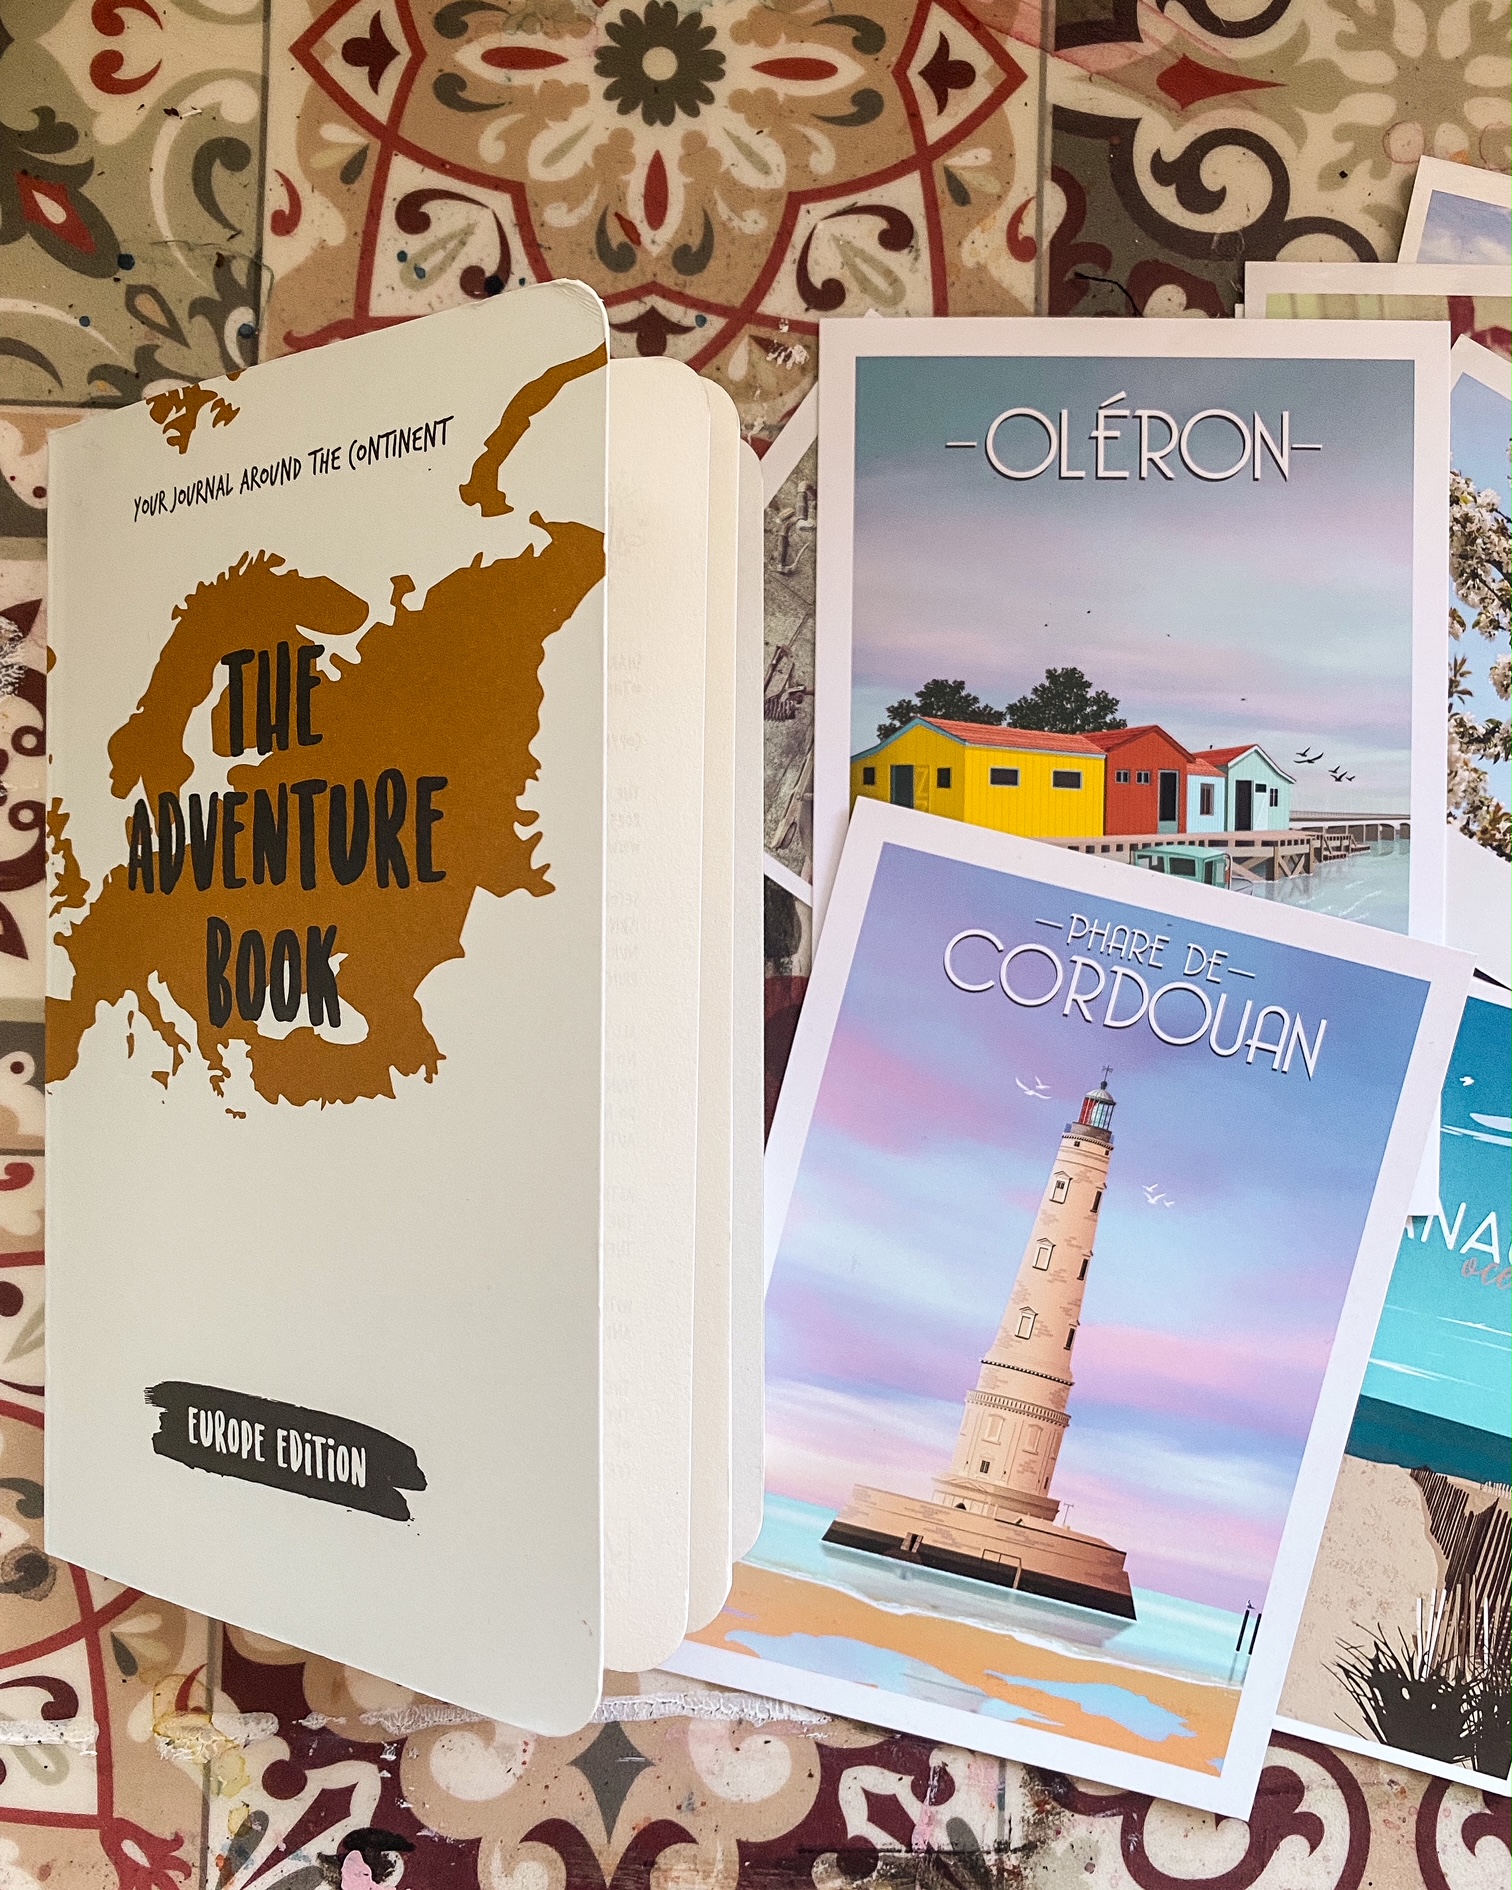 Photo de la couverture du livre The adventure book sur un fond imitant les carreaux de ciment. A côté deux cartes postales dessinées, l'une représentant le phare de Cordouan et l'autre des cabanes de pêcheurs colorées à l'île d'Oléron.